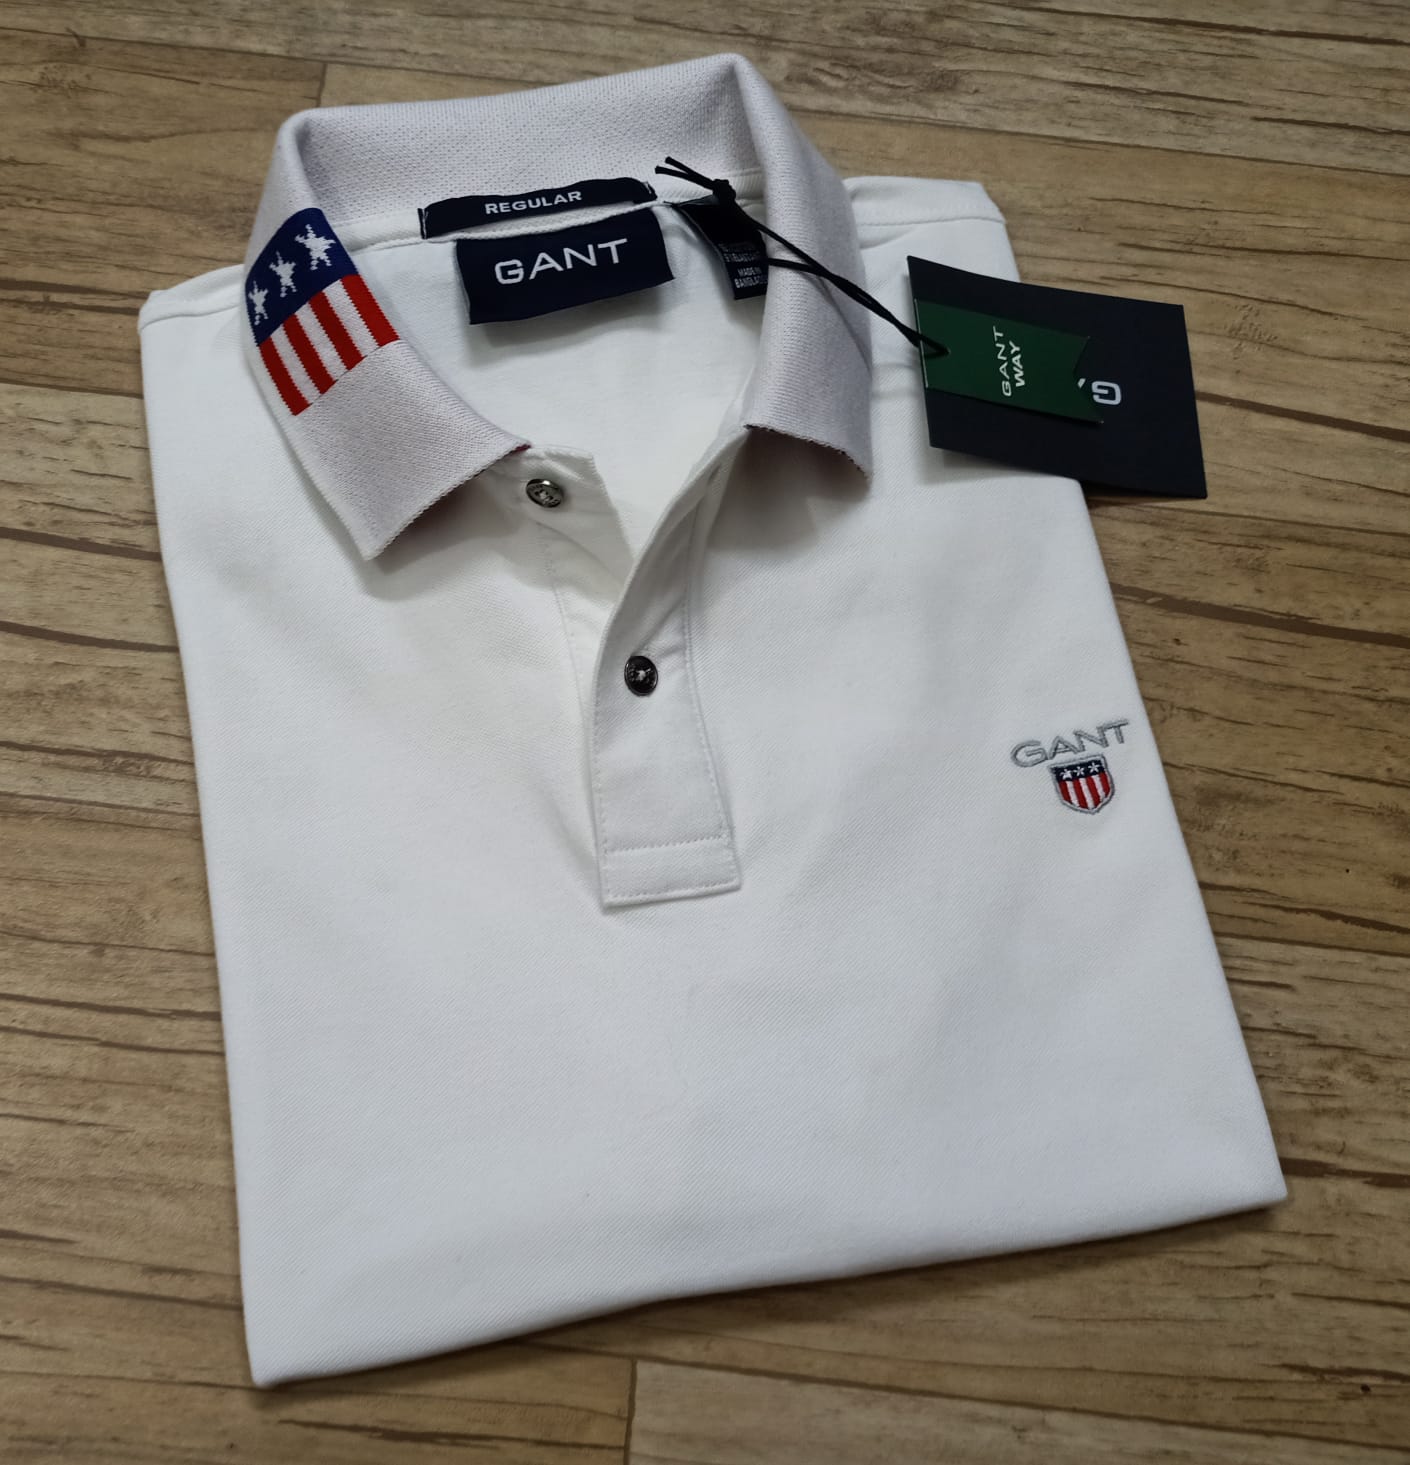 Imported Super Premium Cotton Polo Shirt For Men (ZGANT02) - White